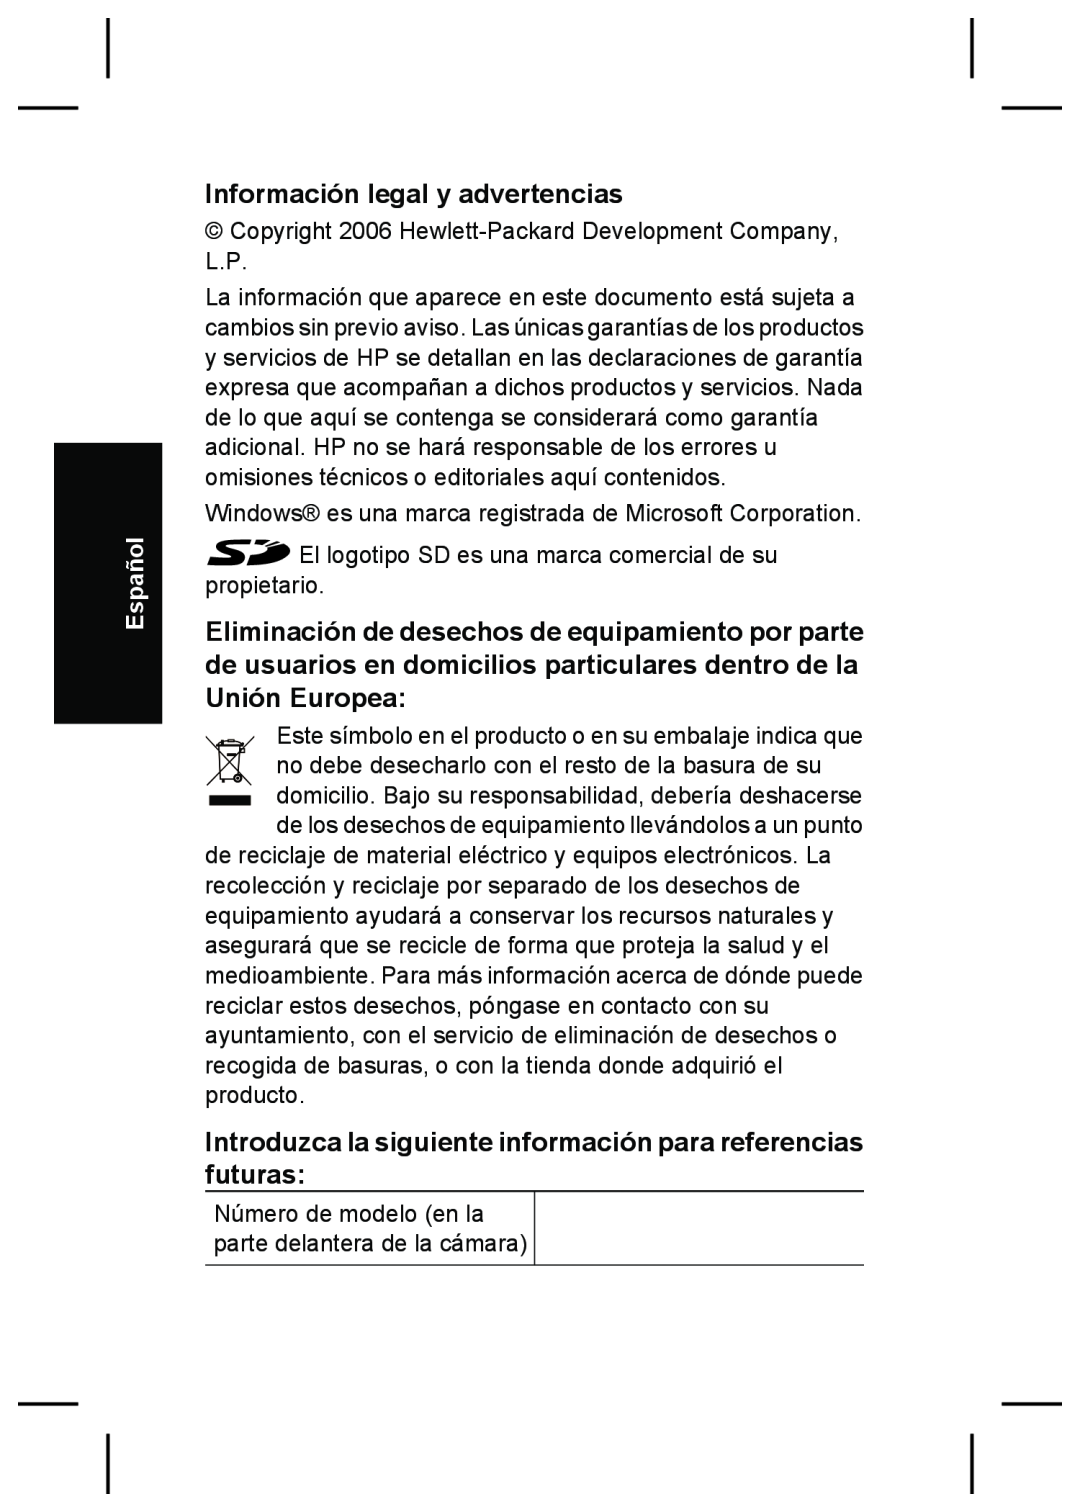 HP R927 manual Información legal y advertencias, Introduzca la siguiente información para referencias futuras, Español 